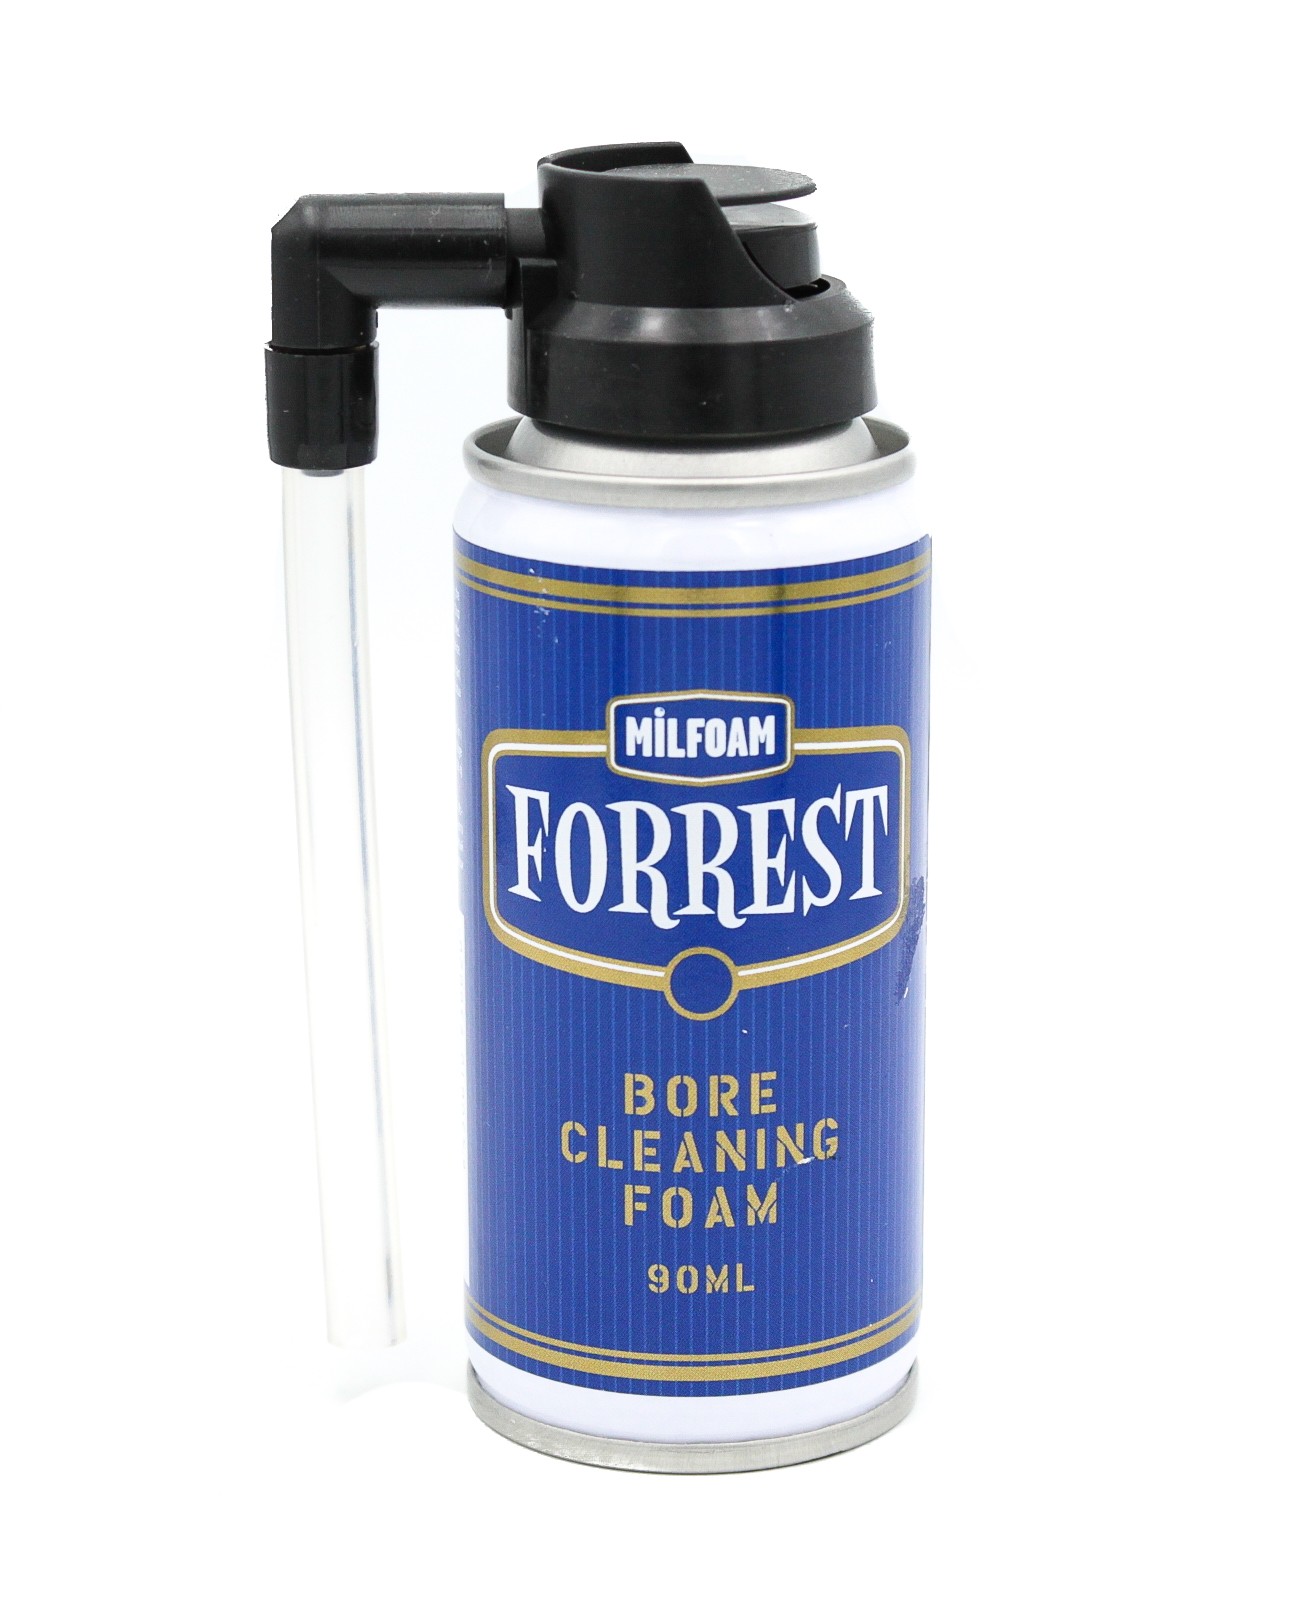 Чистящая пена Forrest для оружия 90ml аэрозоль - фото 1